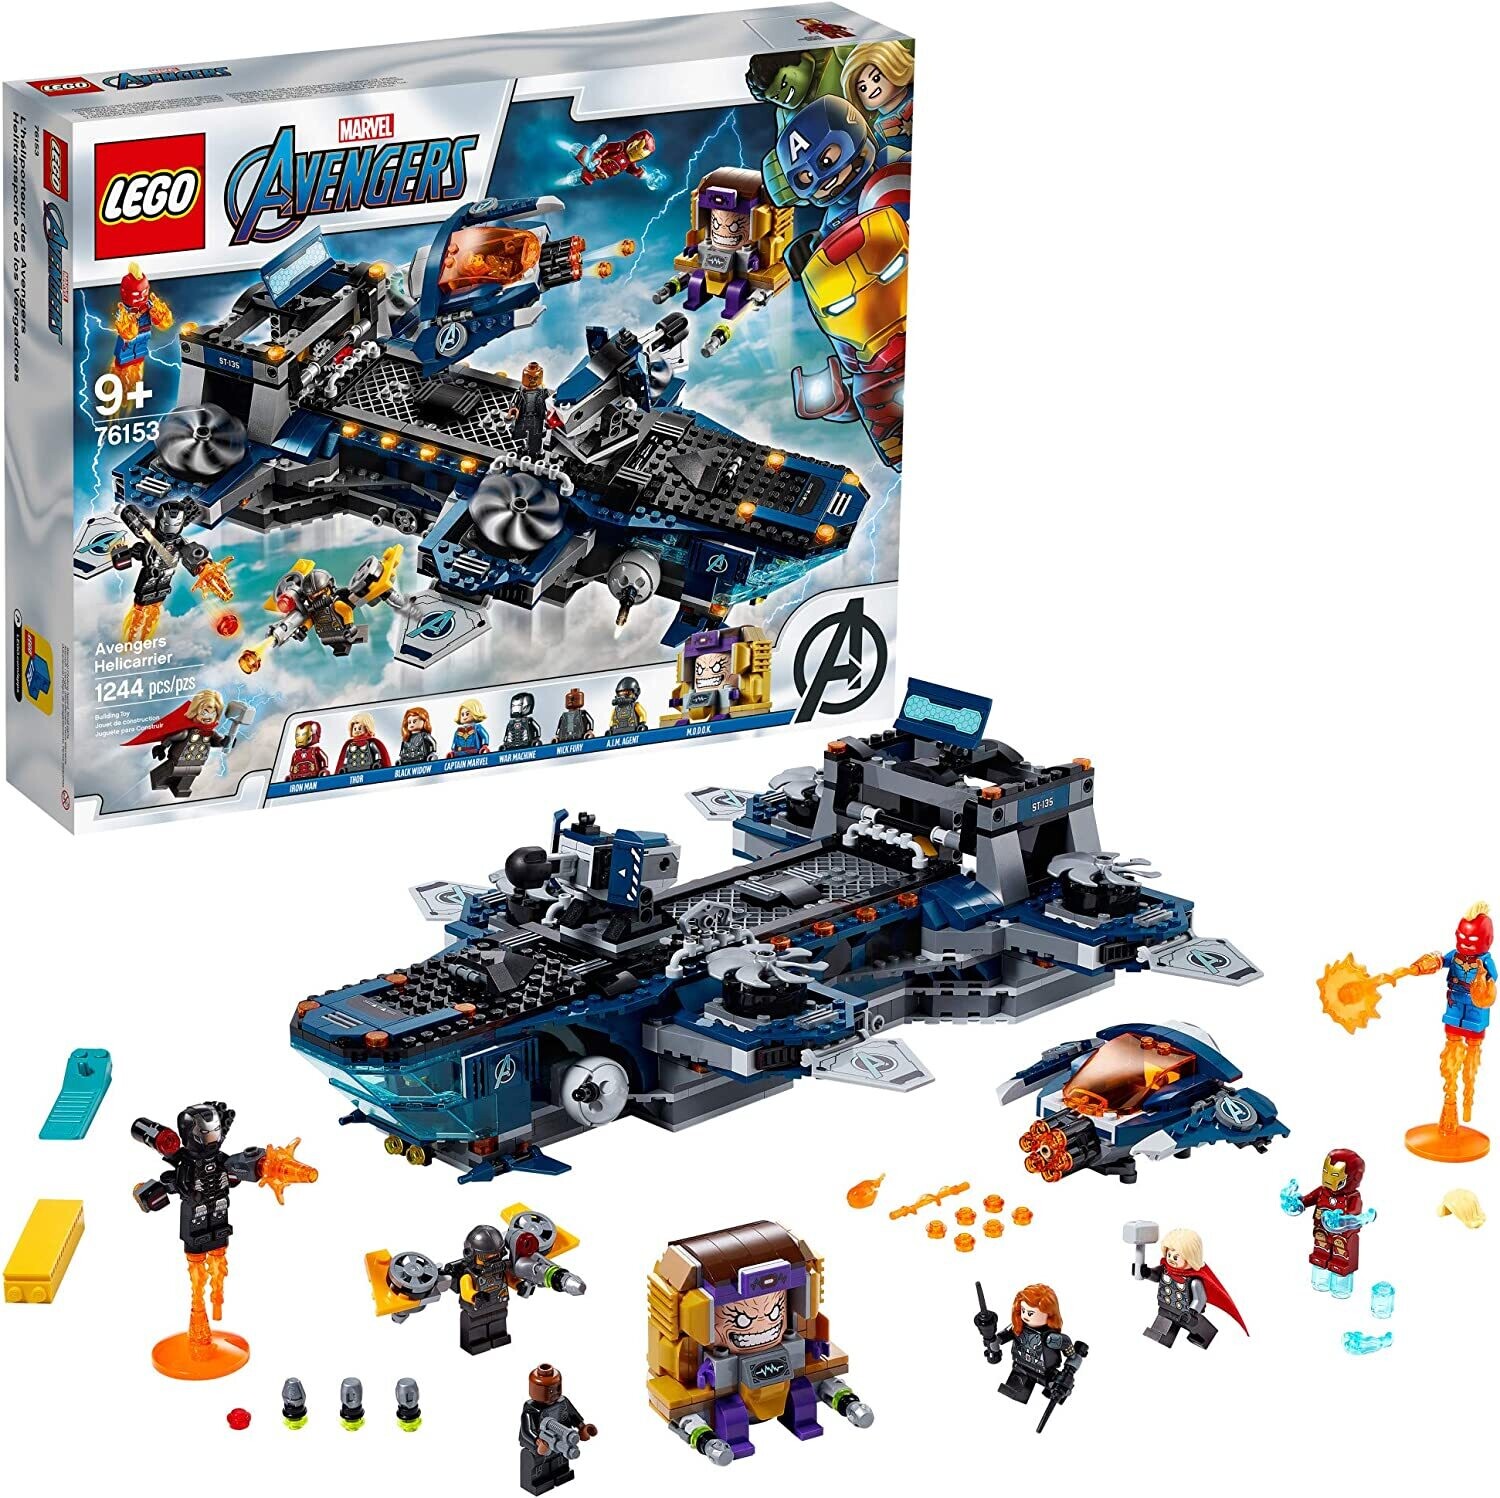 Lego 76153 Avengers Helicarrier